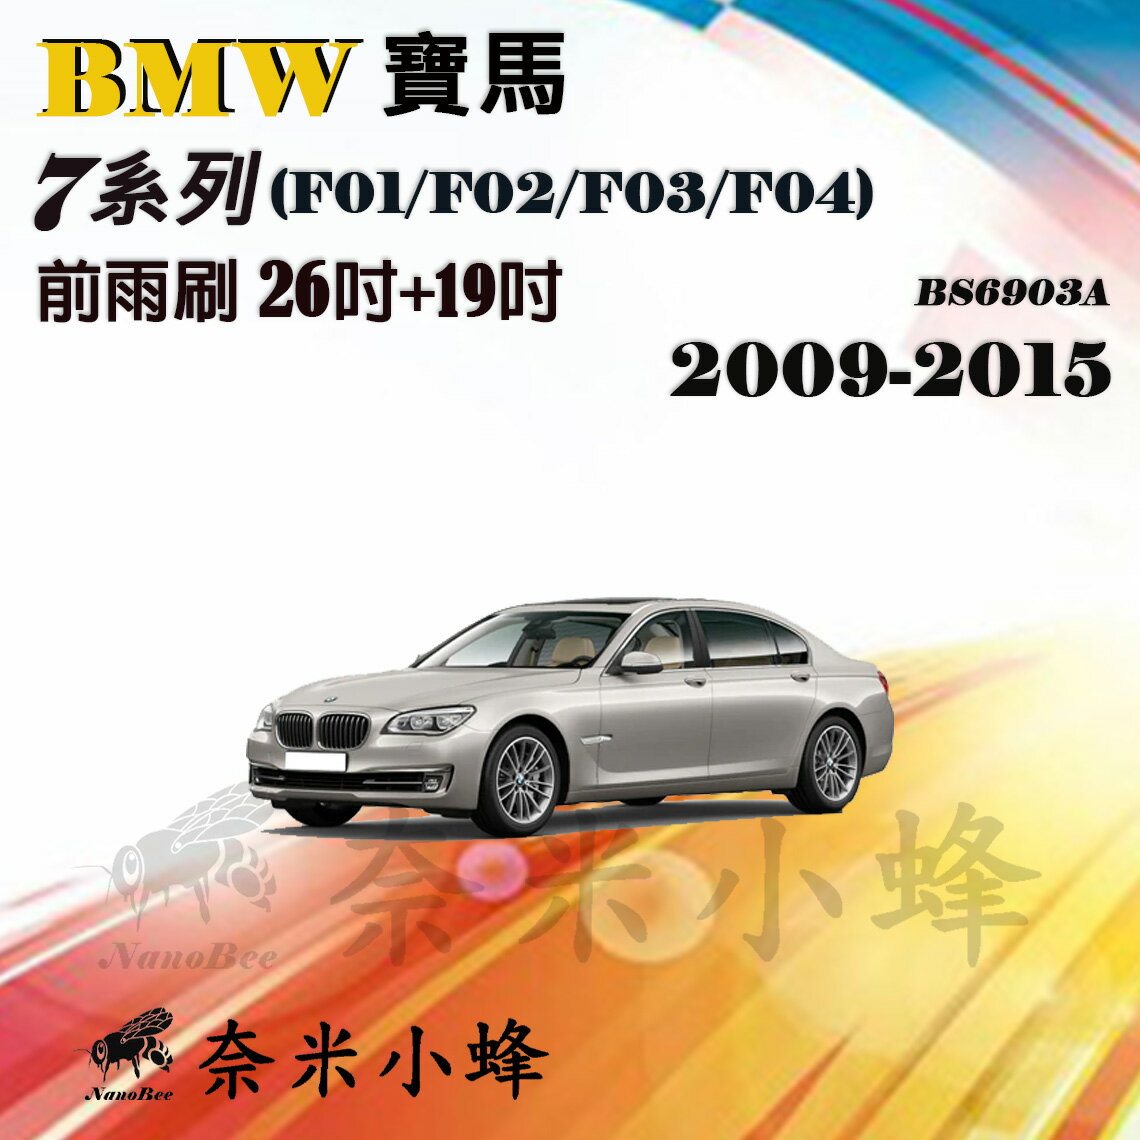 【奈米小蜂】BMW 寶馬 7系列/730d/740Li/750 2009-2015(F01/F02/F04)雨刷 矽膠雨刷 矽膠鍍膜 軟骨雨刷